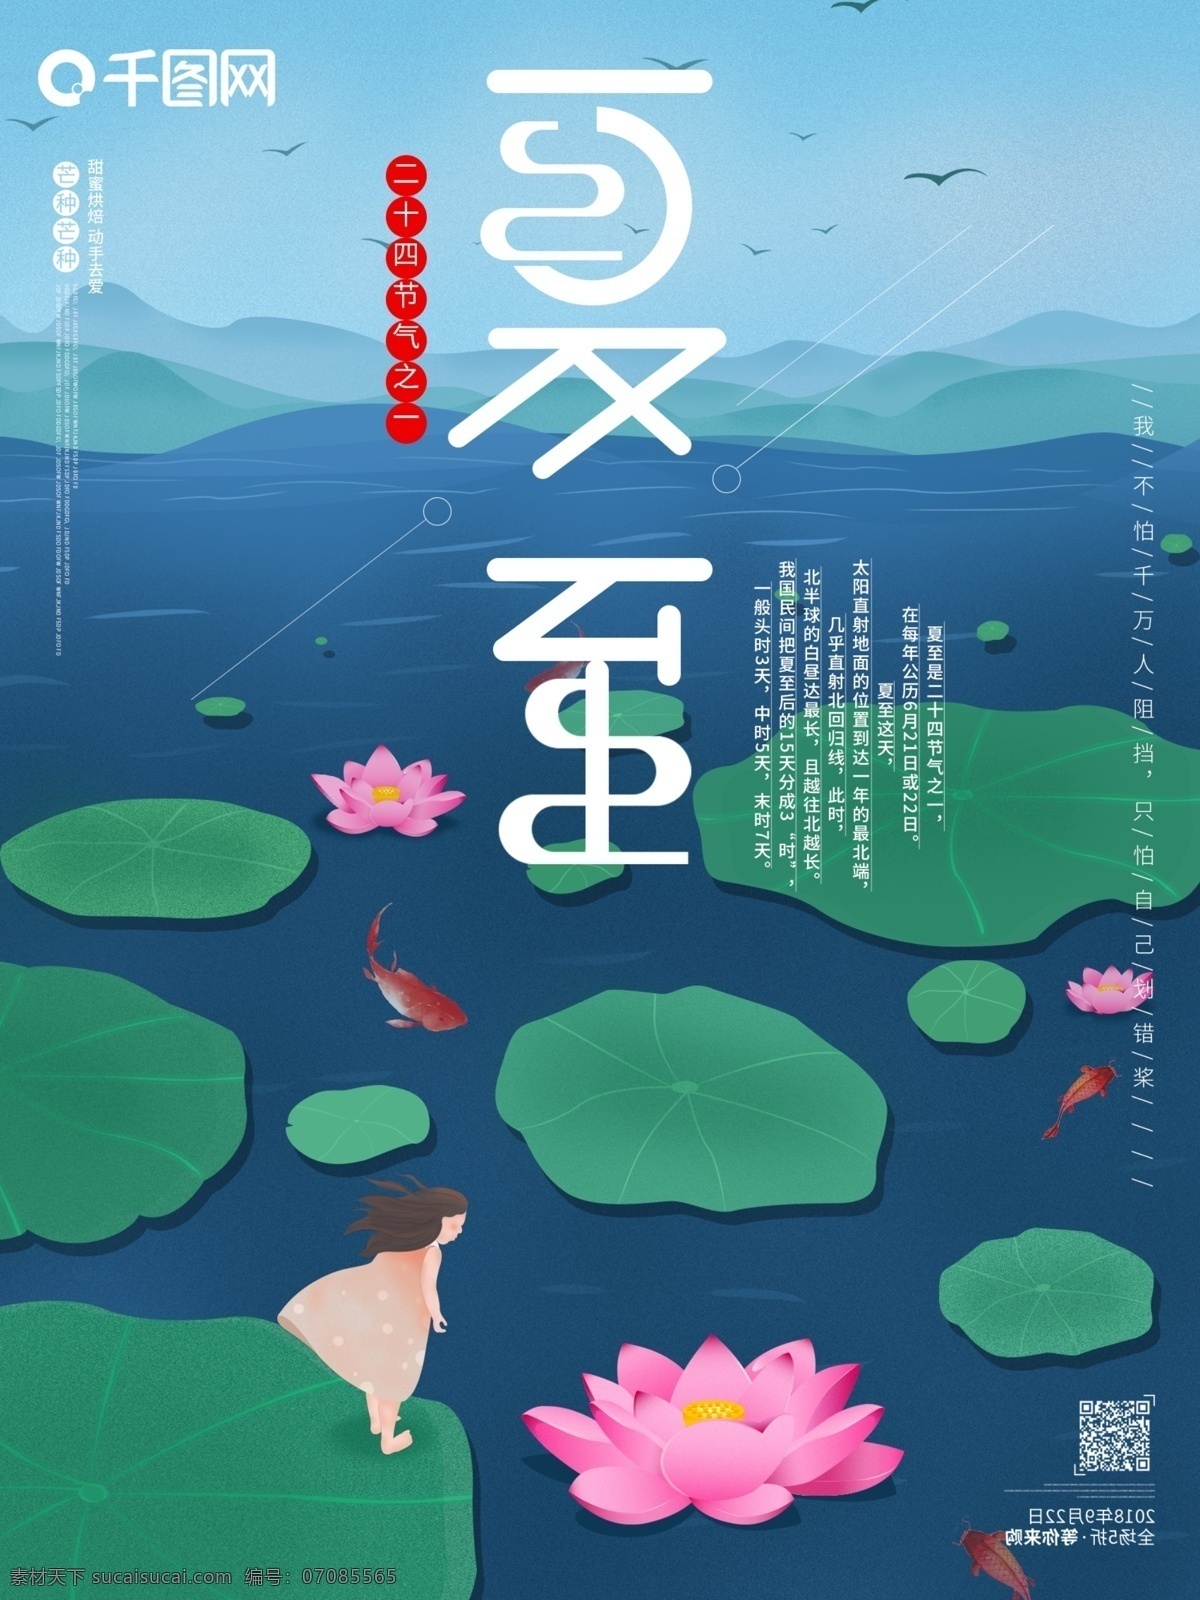 夏至 立夏 节气 之一 中国 传统节日 原创 海报 24节气之一 传统 节日 夏天